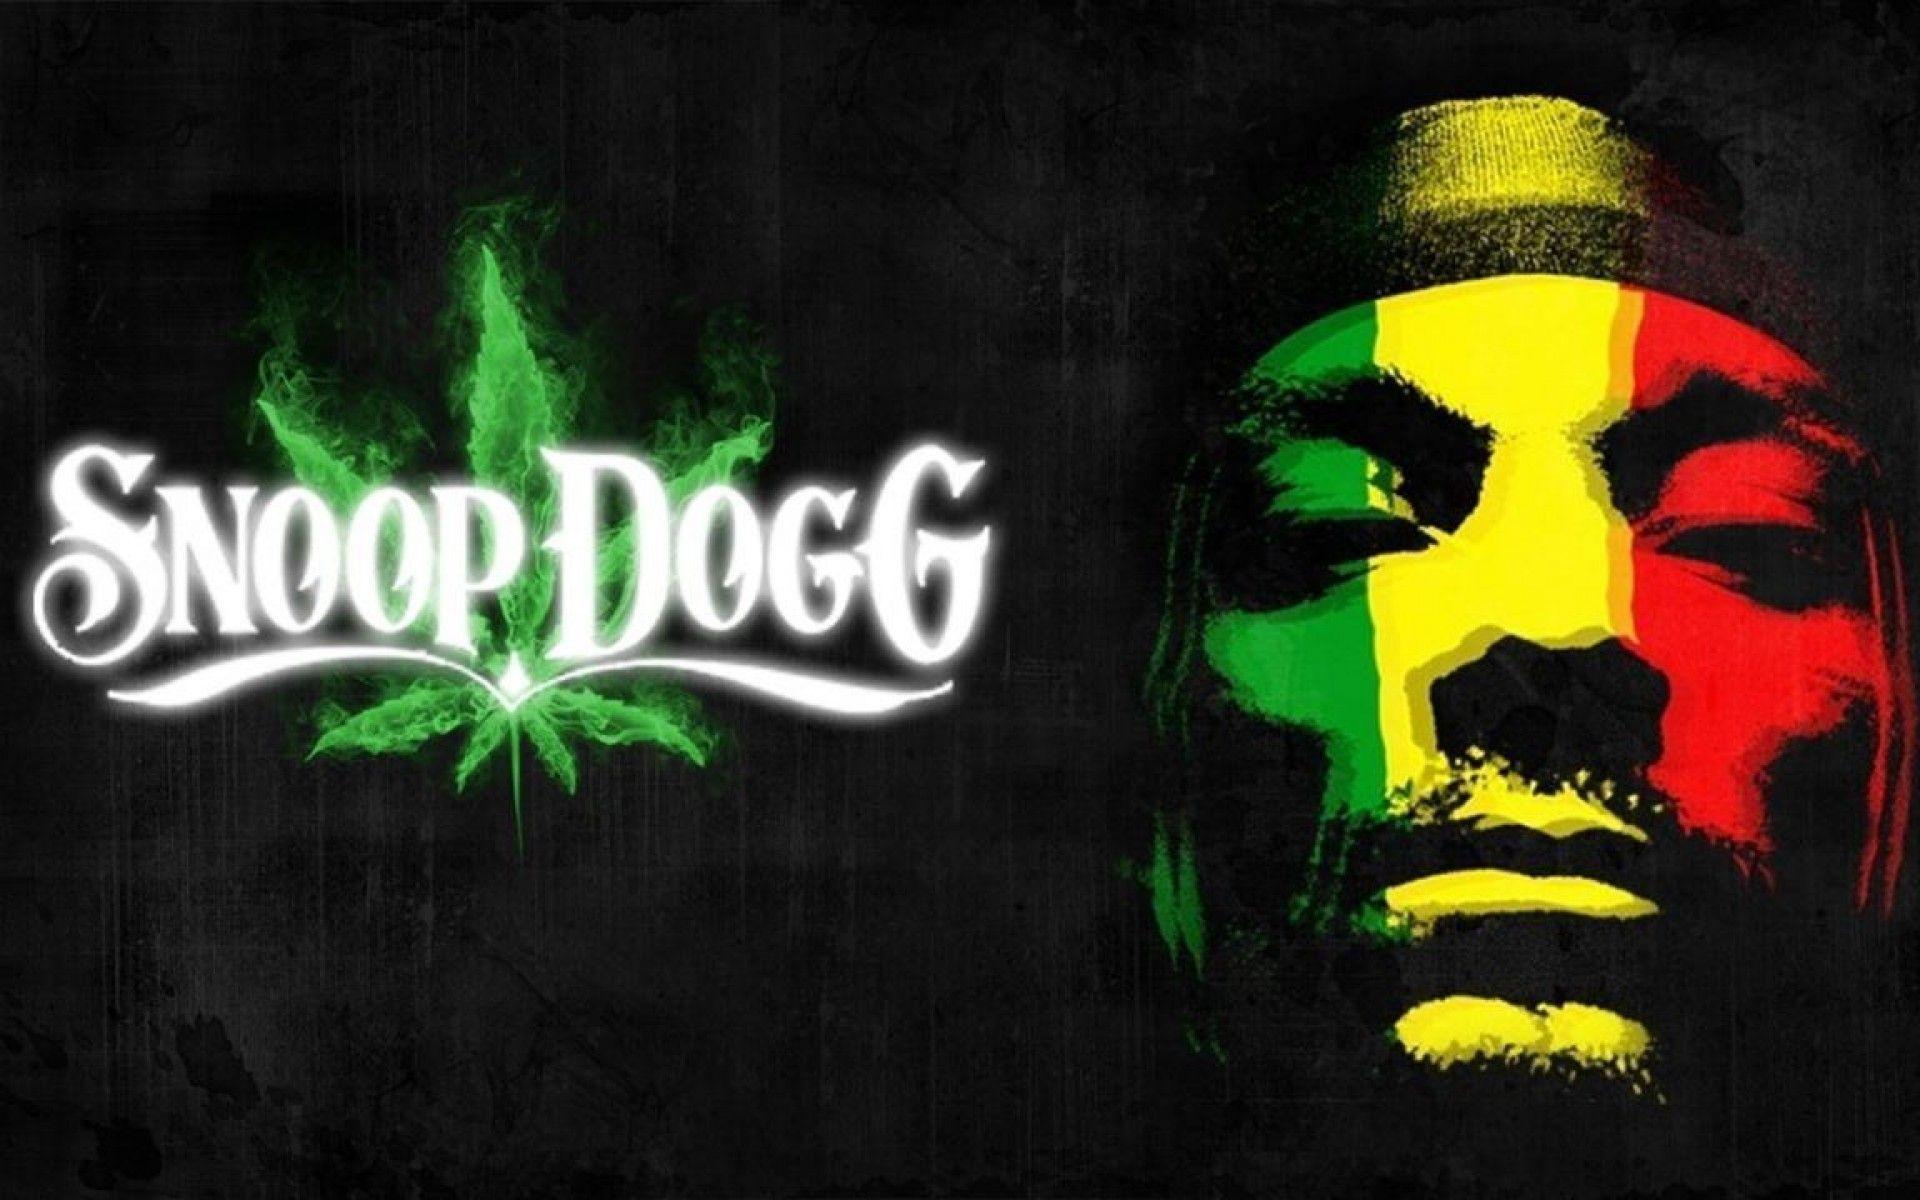 Snoop Dogg Wallpaper HD. Snoop Dogg Wallpaper, Background